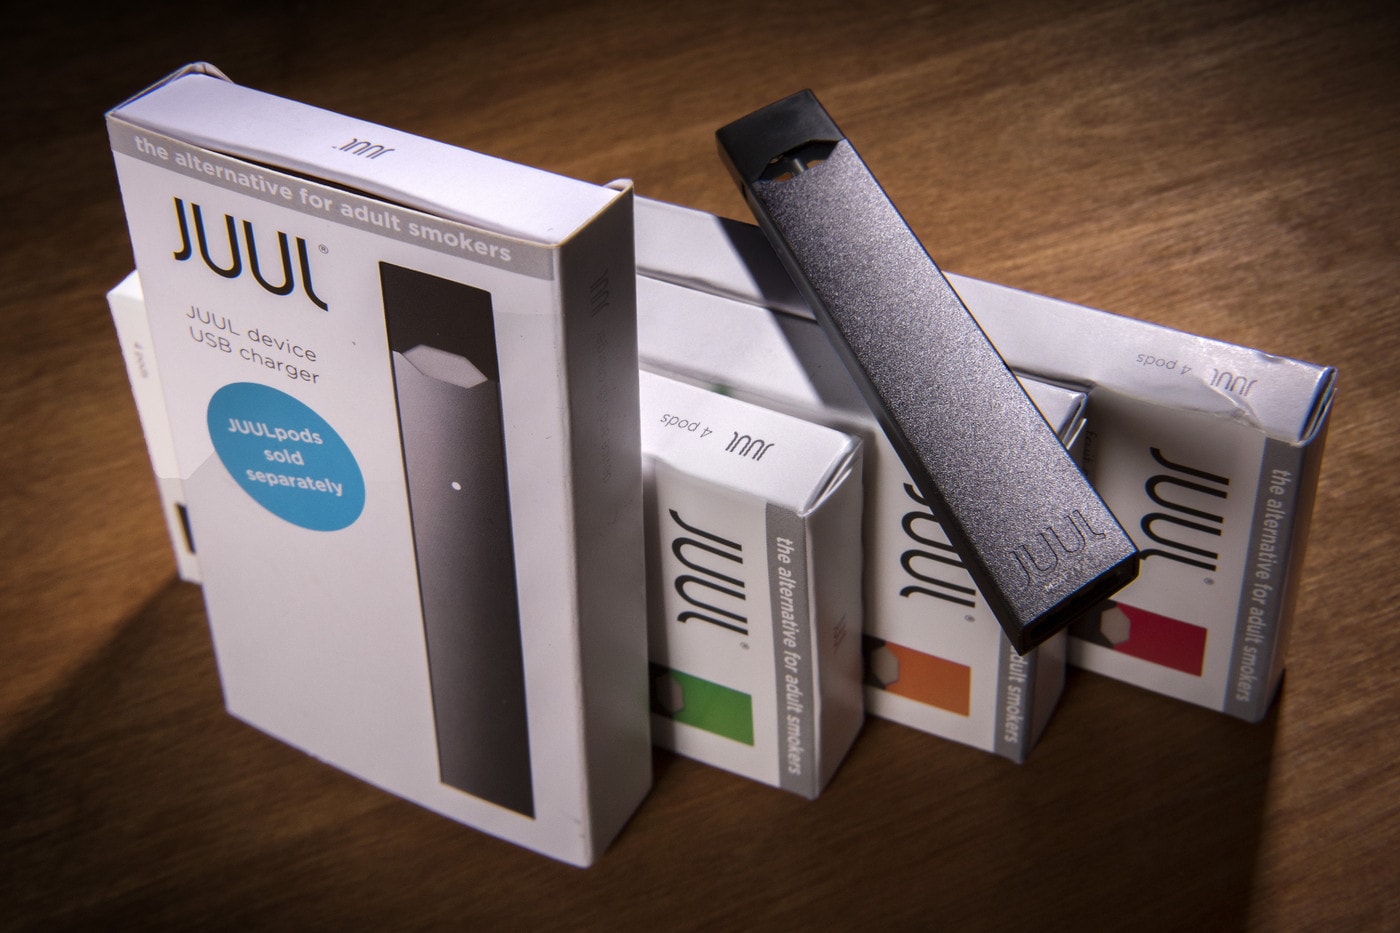 쥴과 같은 전자담배, 샌프란시스코에서 판매 금지된다, 미국 최초, 2020년 시행 